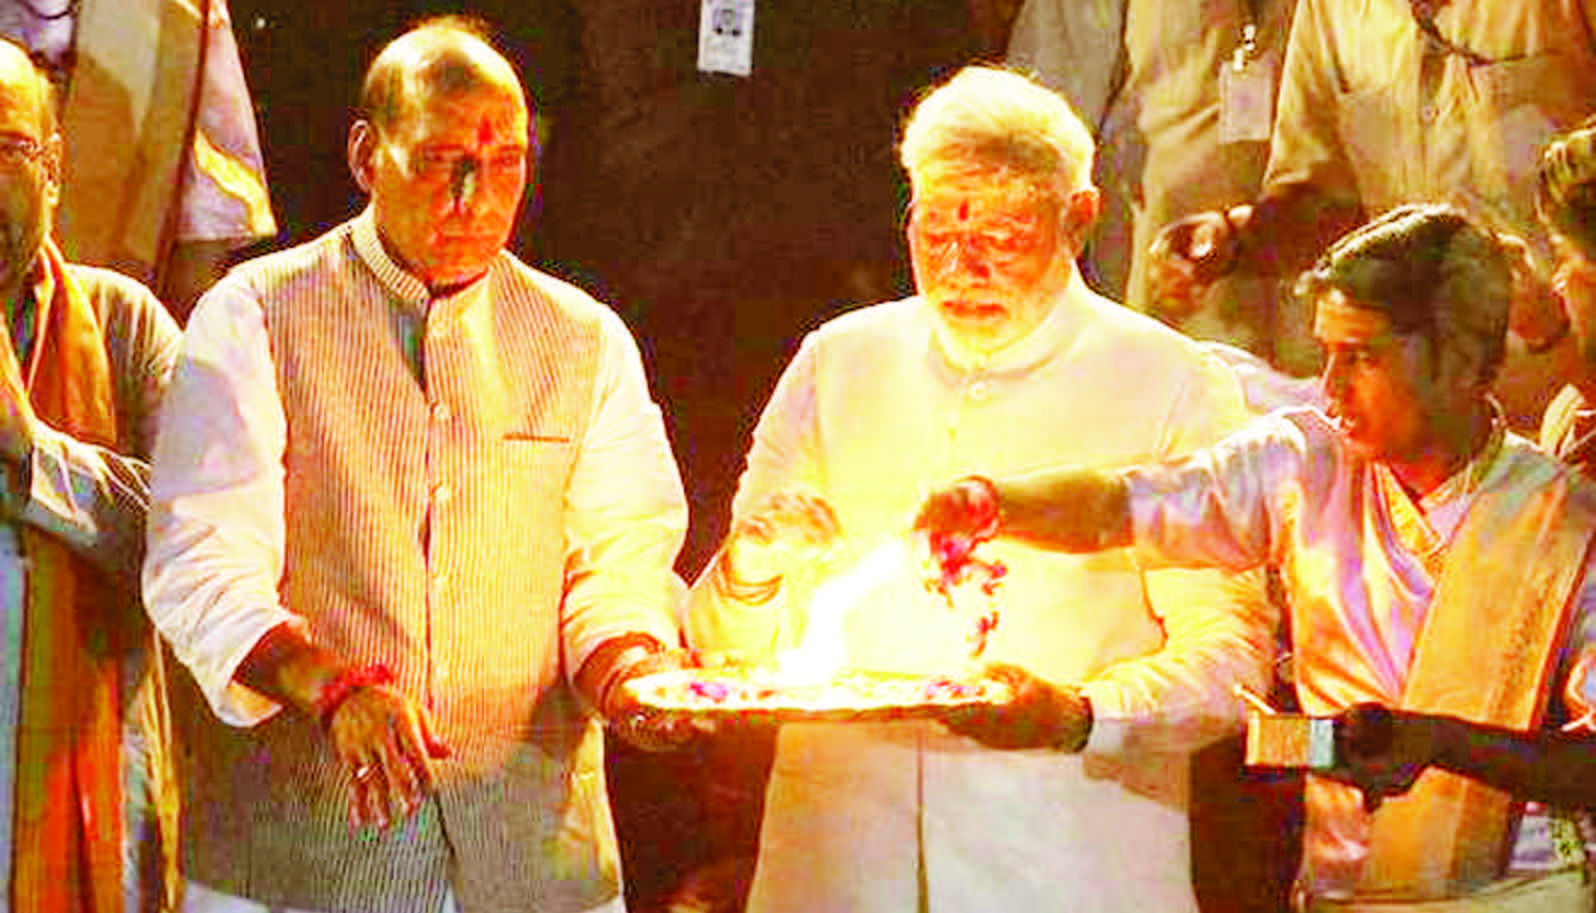 Prime Minister Narendra Modi and Home Minister Rajnath Singh perform Pooja